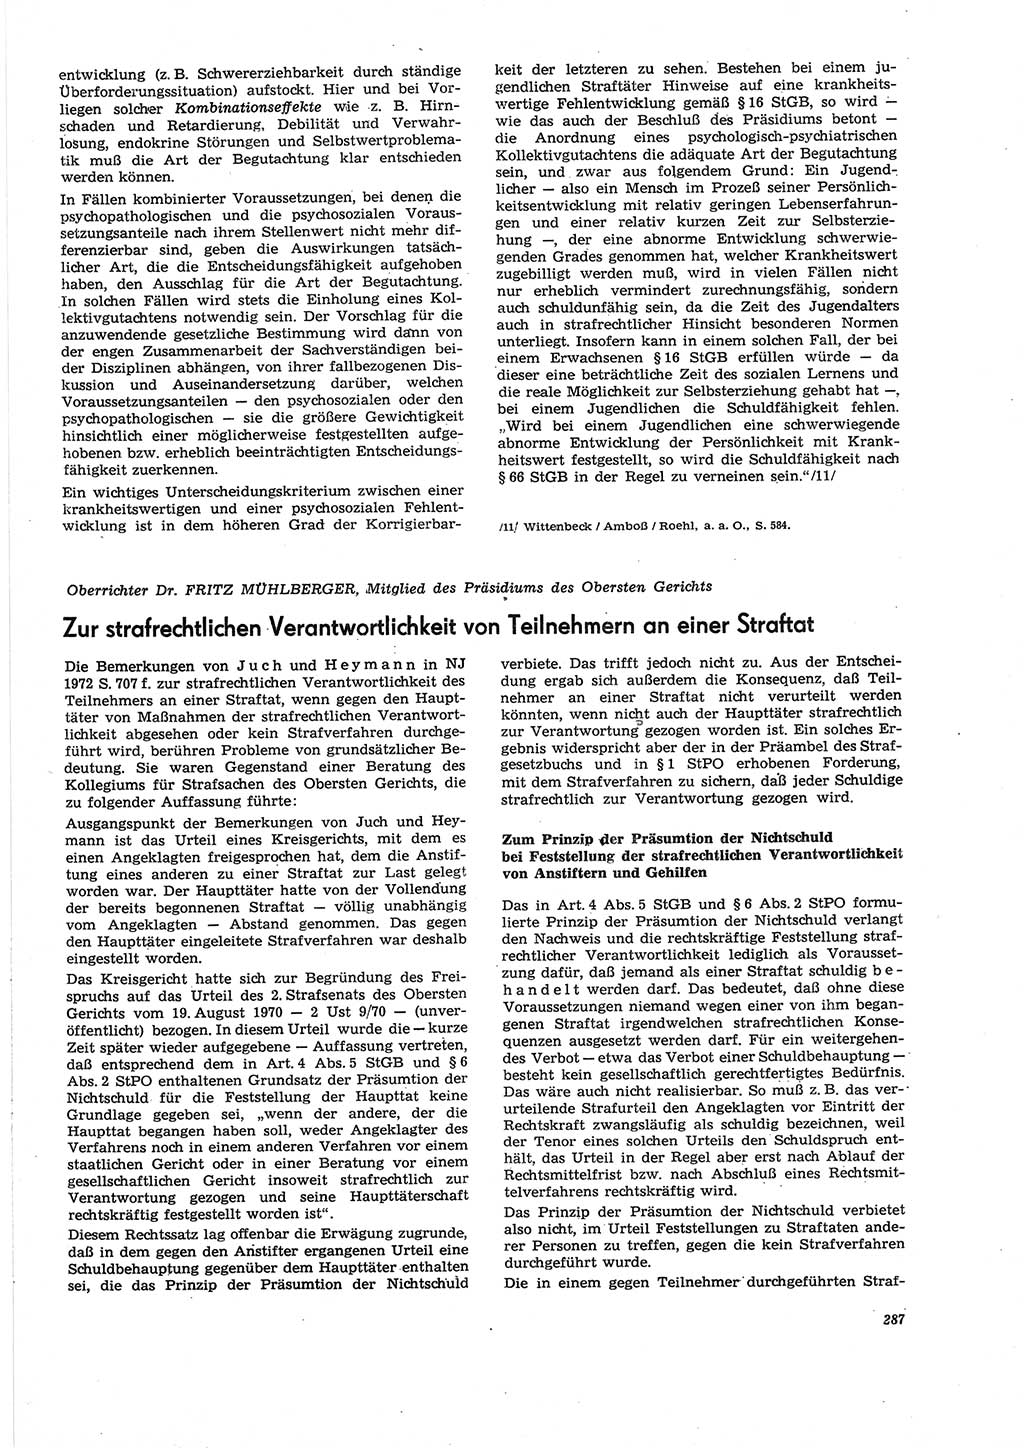 Neue Justiz (NJ), Zeitschrift für Recht und Rechtswissenschaft [Deutsche Demokratische Republik (DDR)], 27. Jahrgang 1973, Seite 287 (NJ DDR 1973, S. 287)